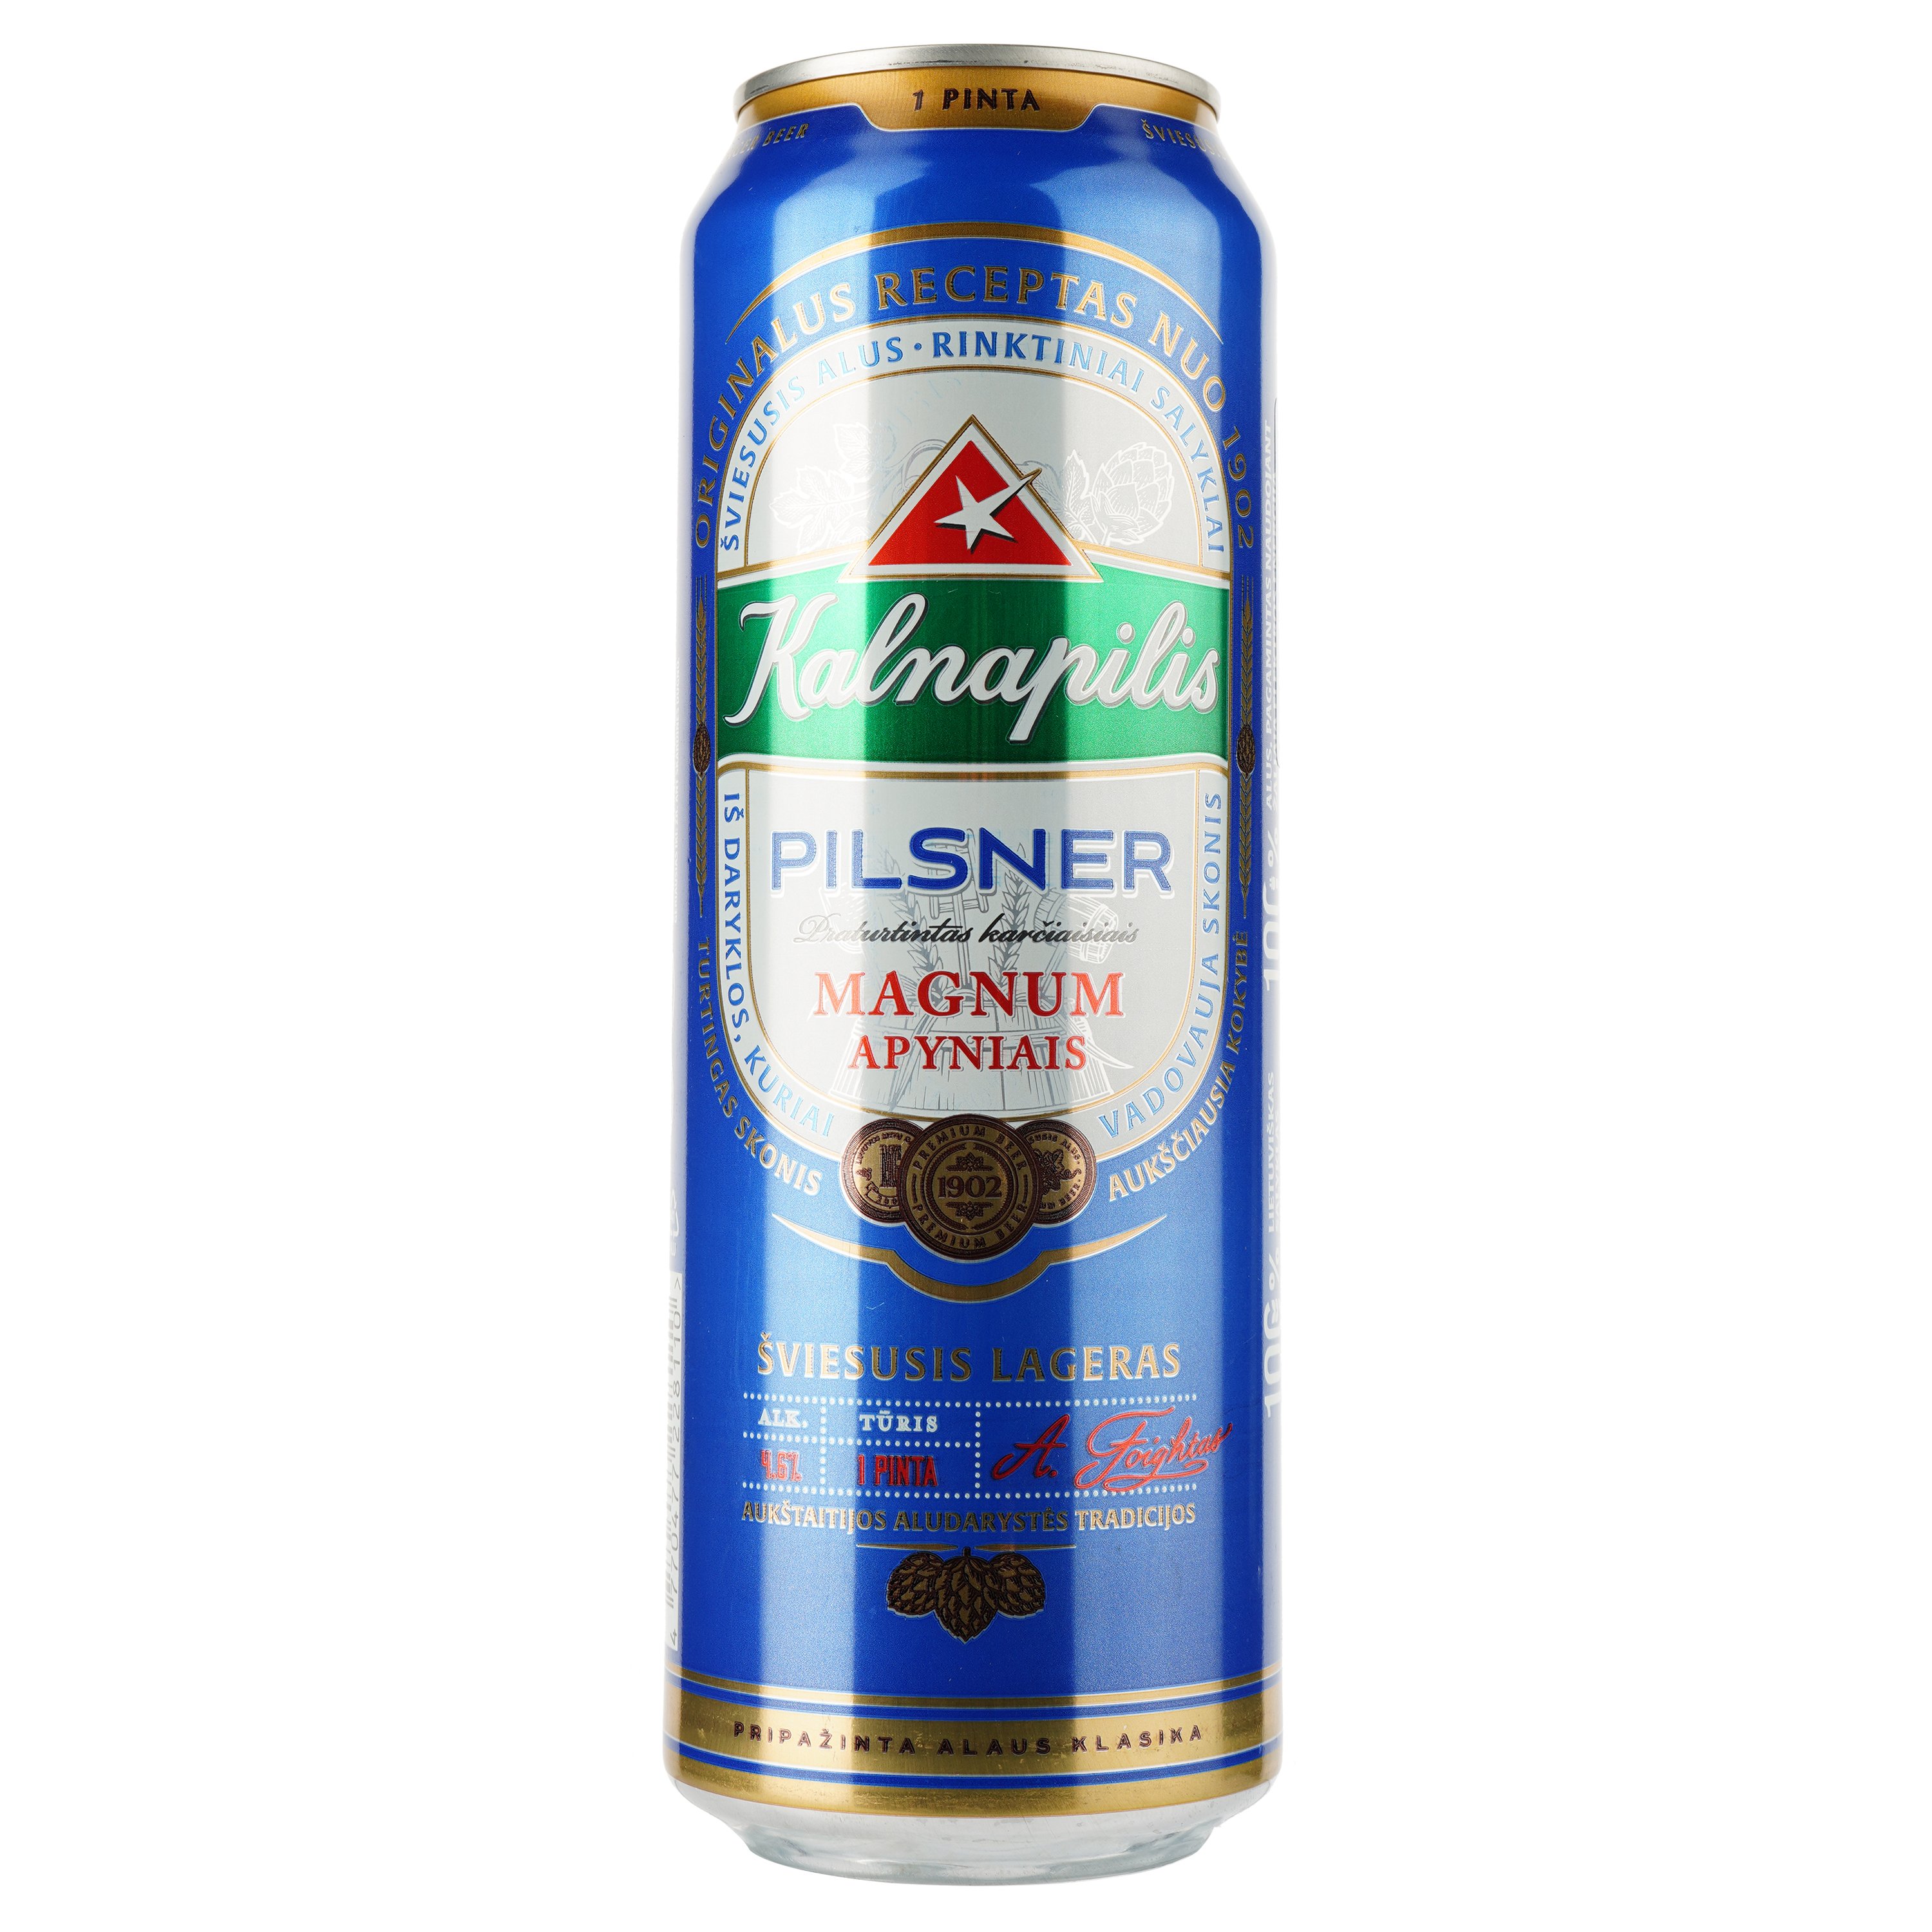 Пиво Kalnapilis Pilsner, светлое, фильтрованное, 4,6%, ж/б, 0,568 л - фото 1